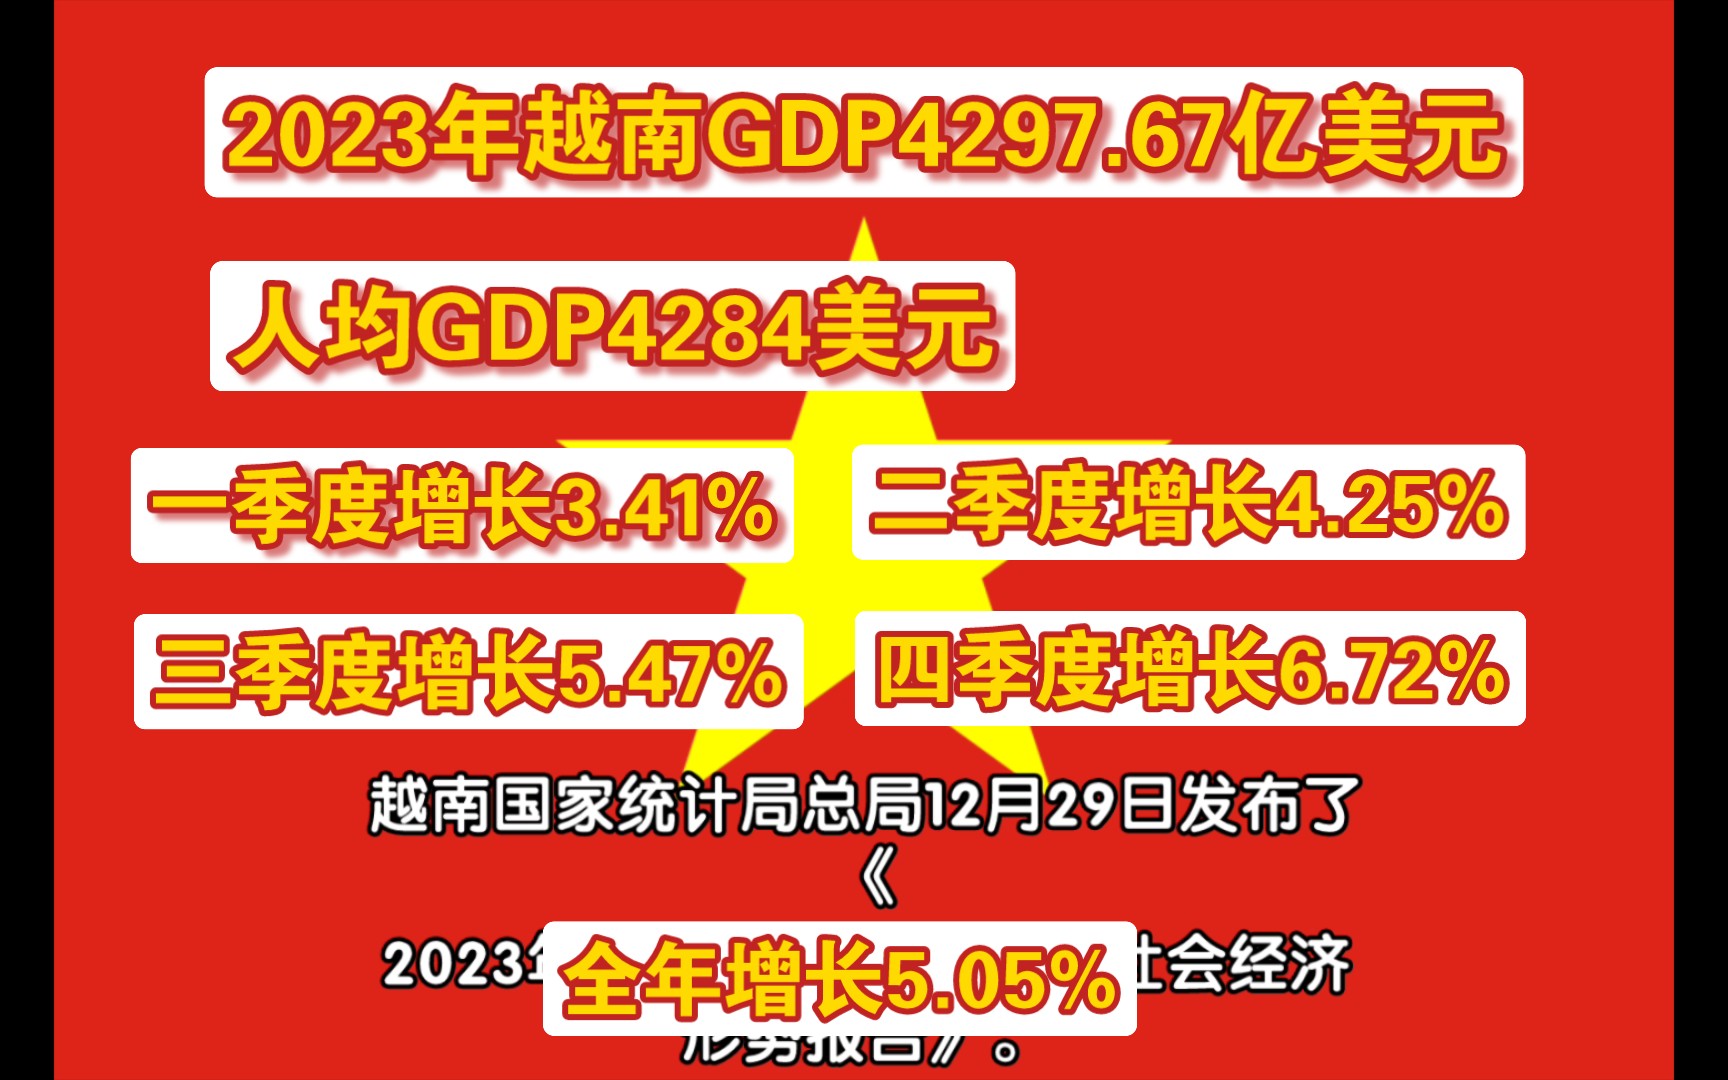 2023年越南gdp429767亿美元,人均gdp4284美元